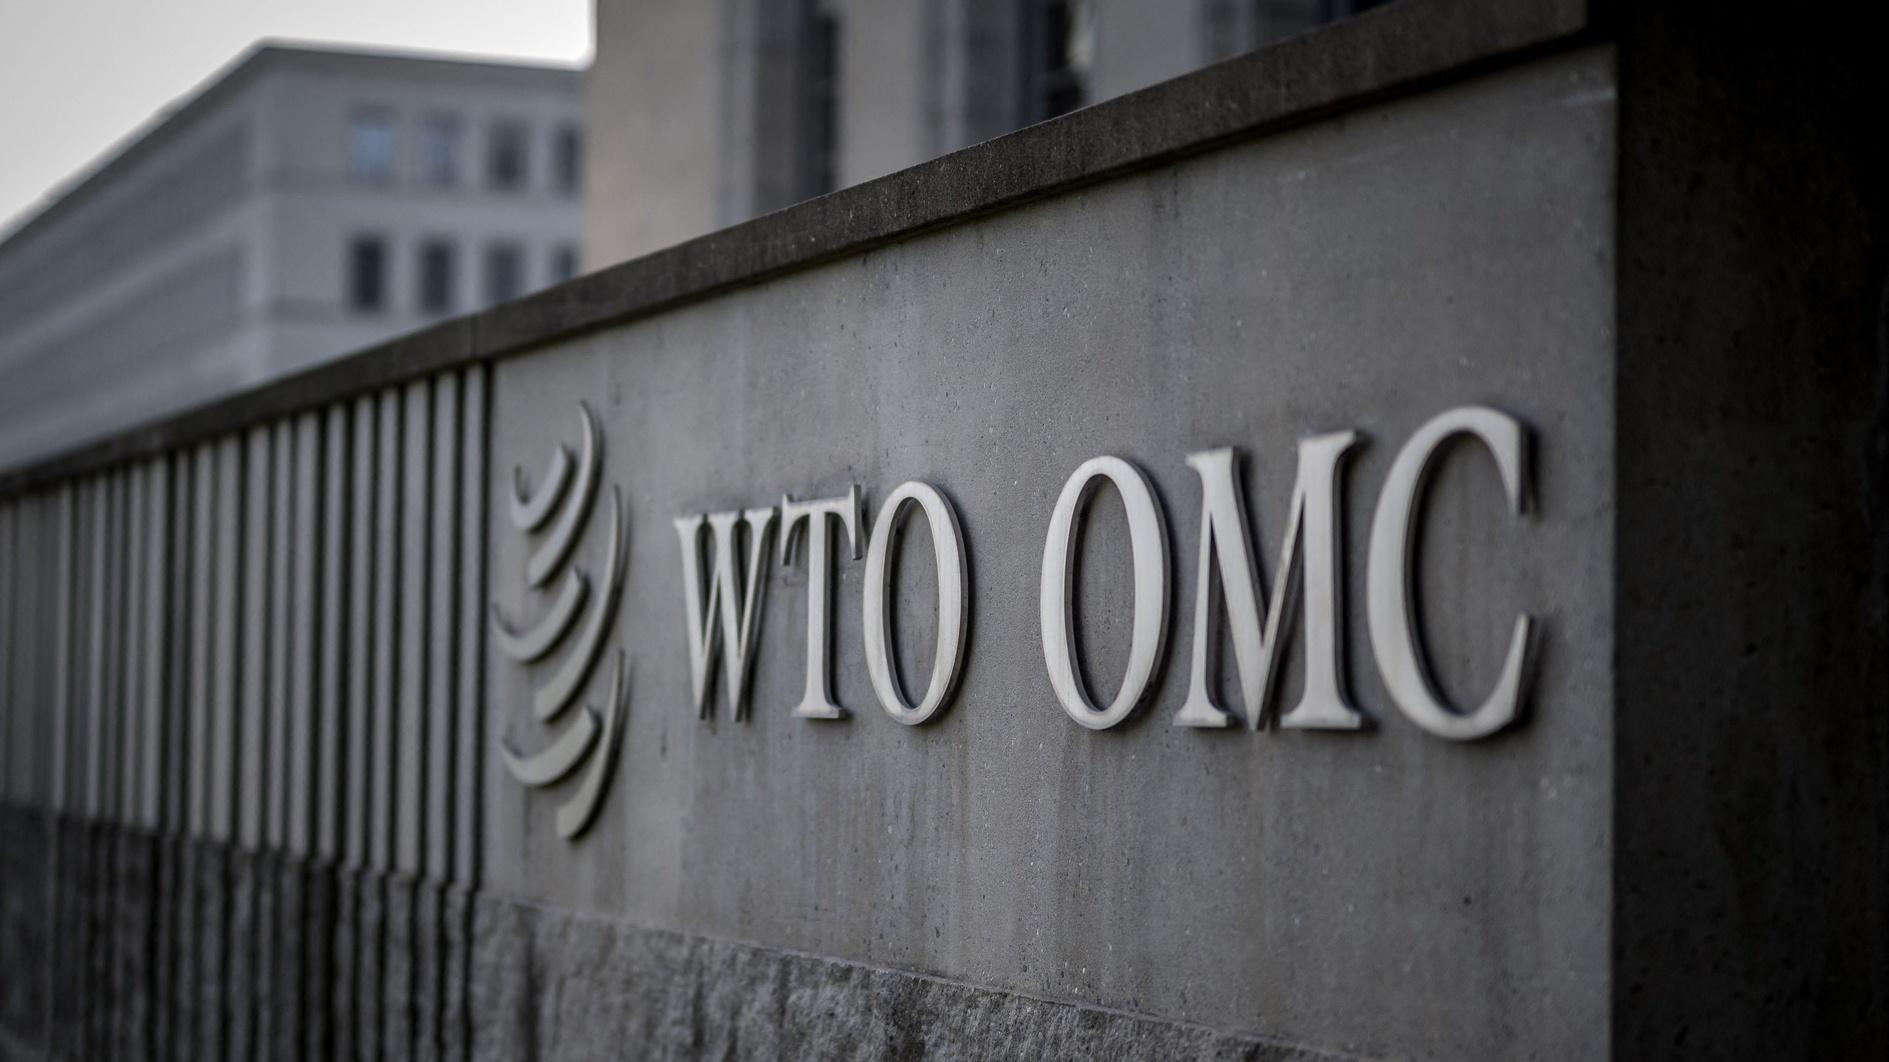 Grote handelsovereenkomsten zijn waarschijnlijk ongrijpbaar tijdens de WTO-bijeenkomst in Abu Dhabi